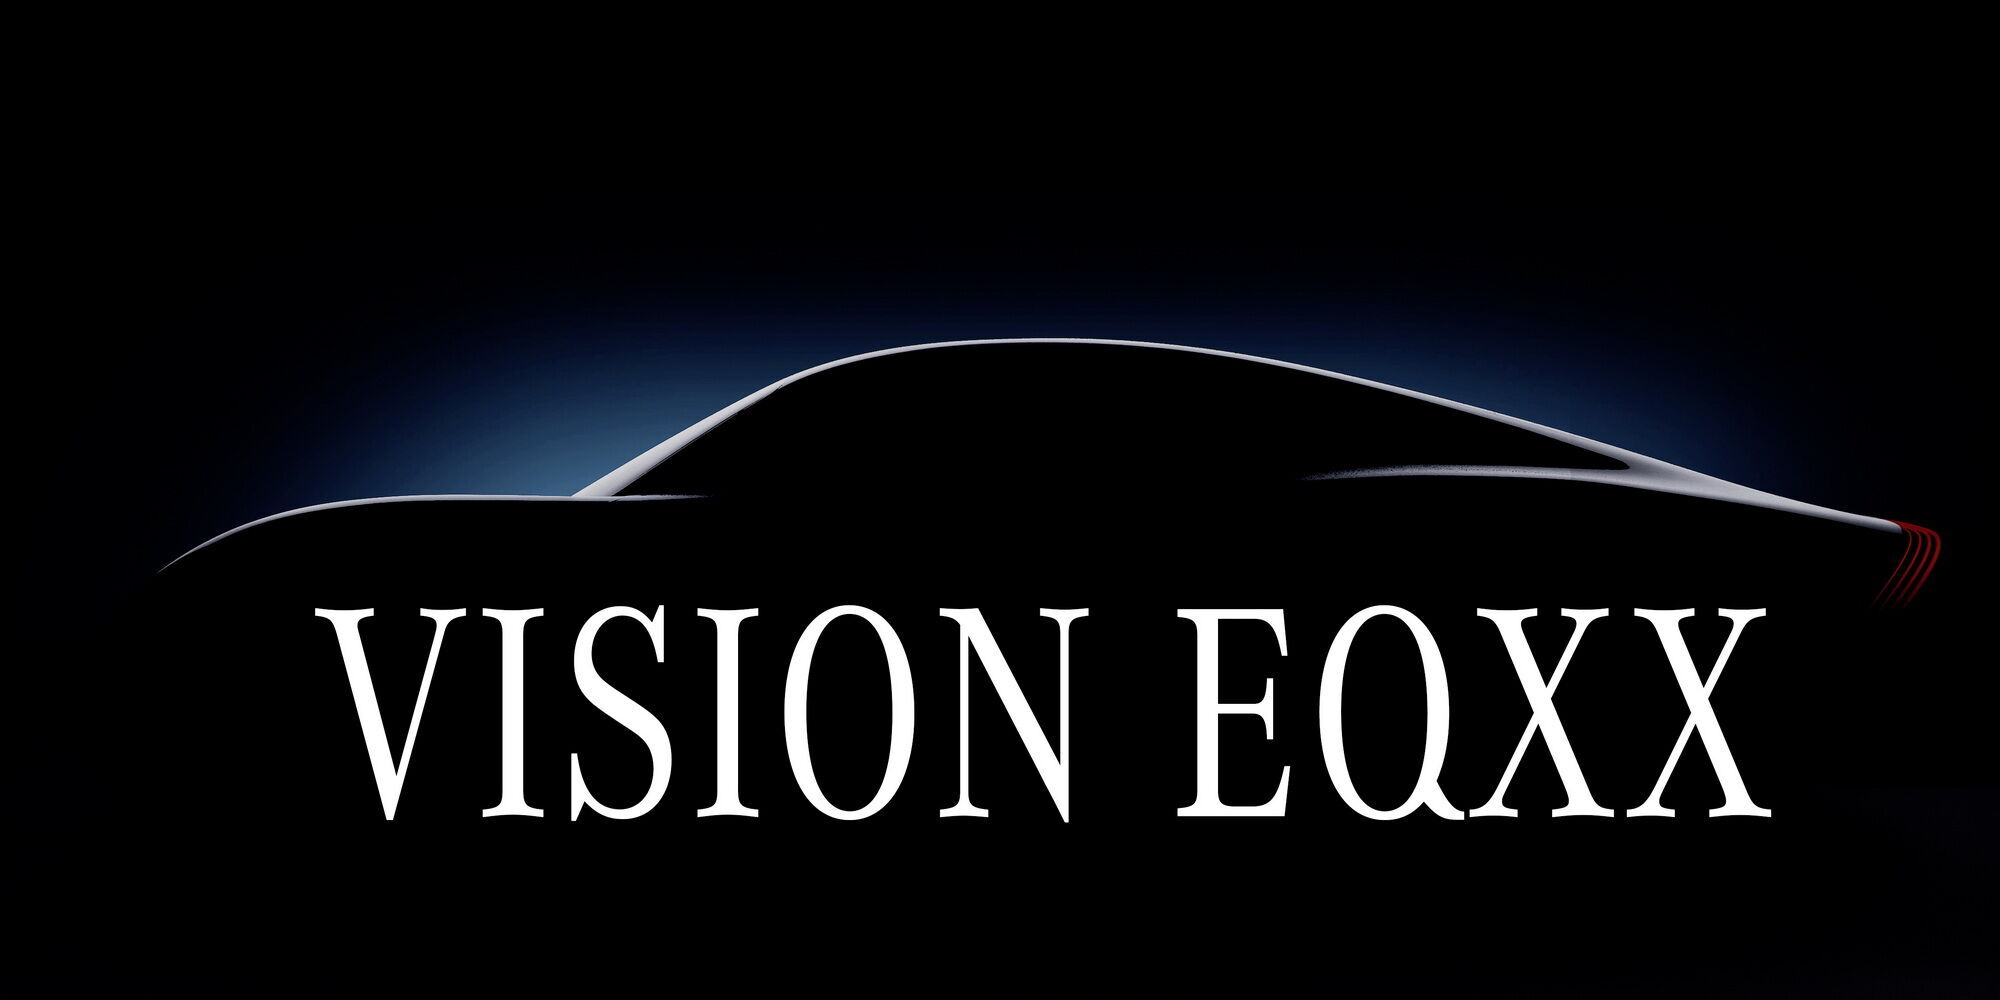 Основний акцент при створенні Vision EQXX сконцентрований на аеродинамічній ефективності